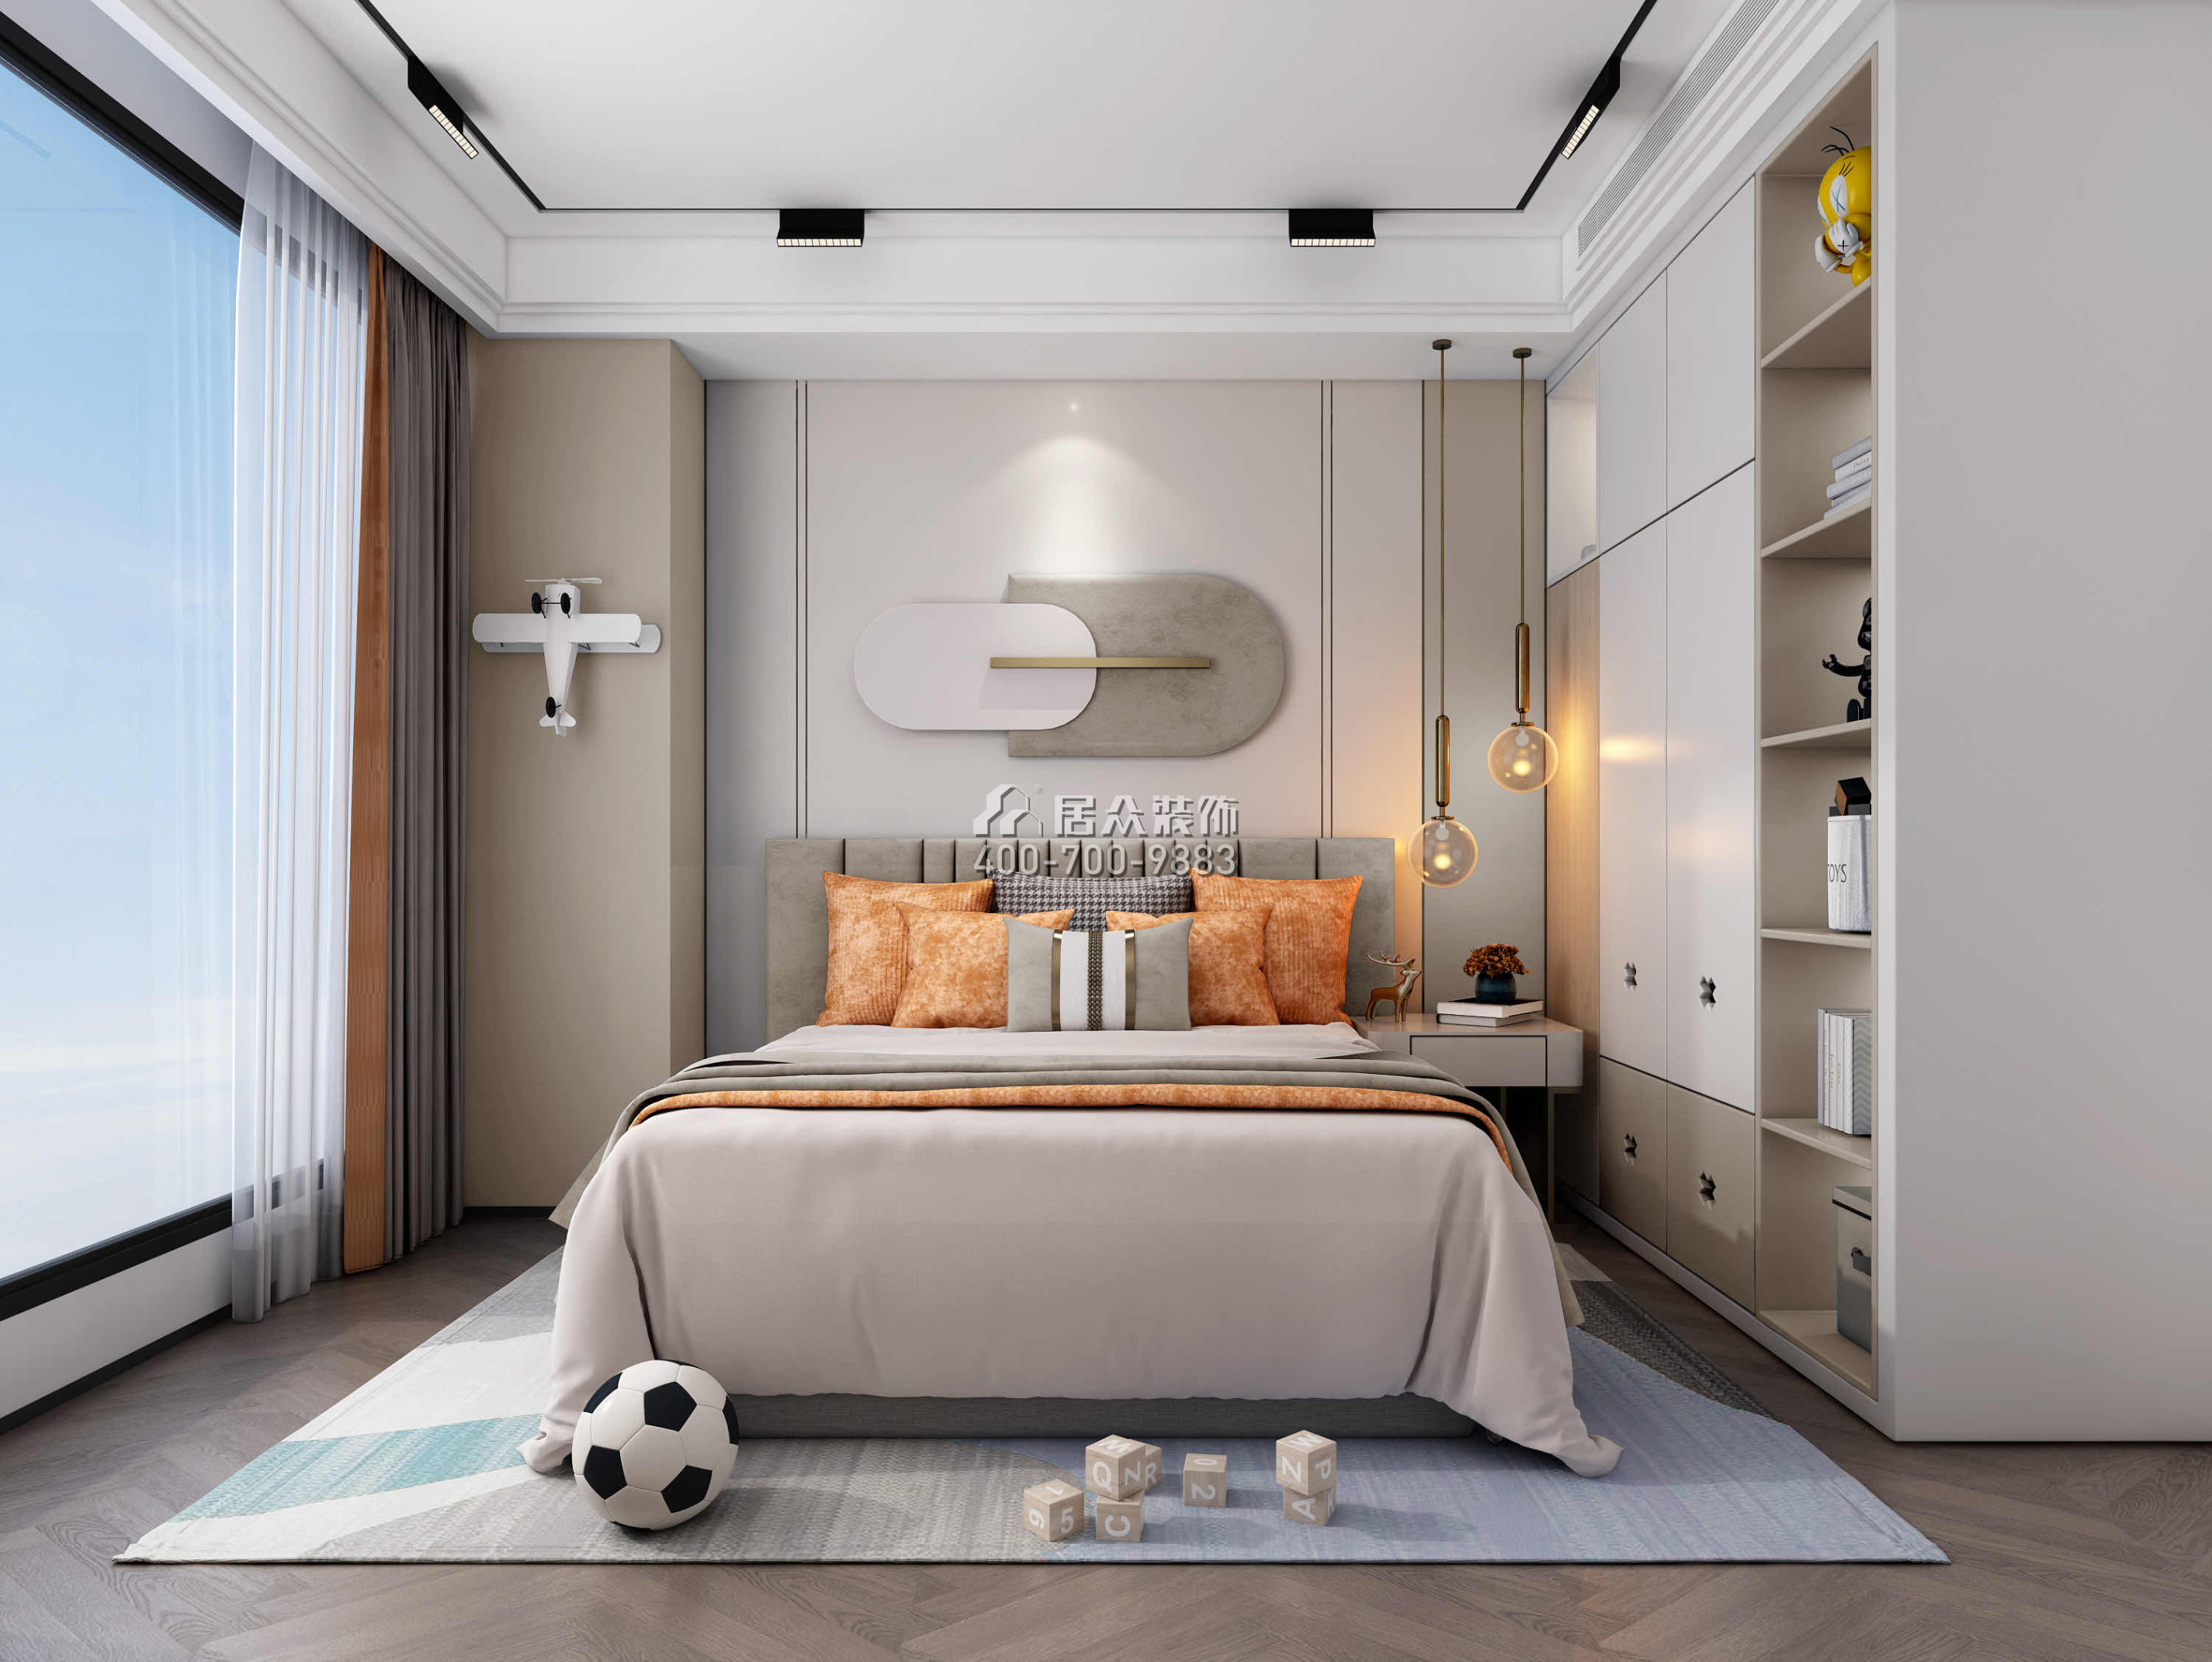 天鹅堡370平方米现代简约风格平层户型卧室装修效果图